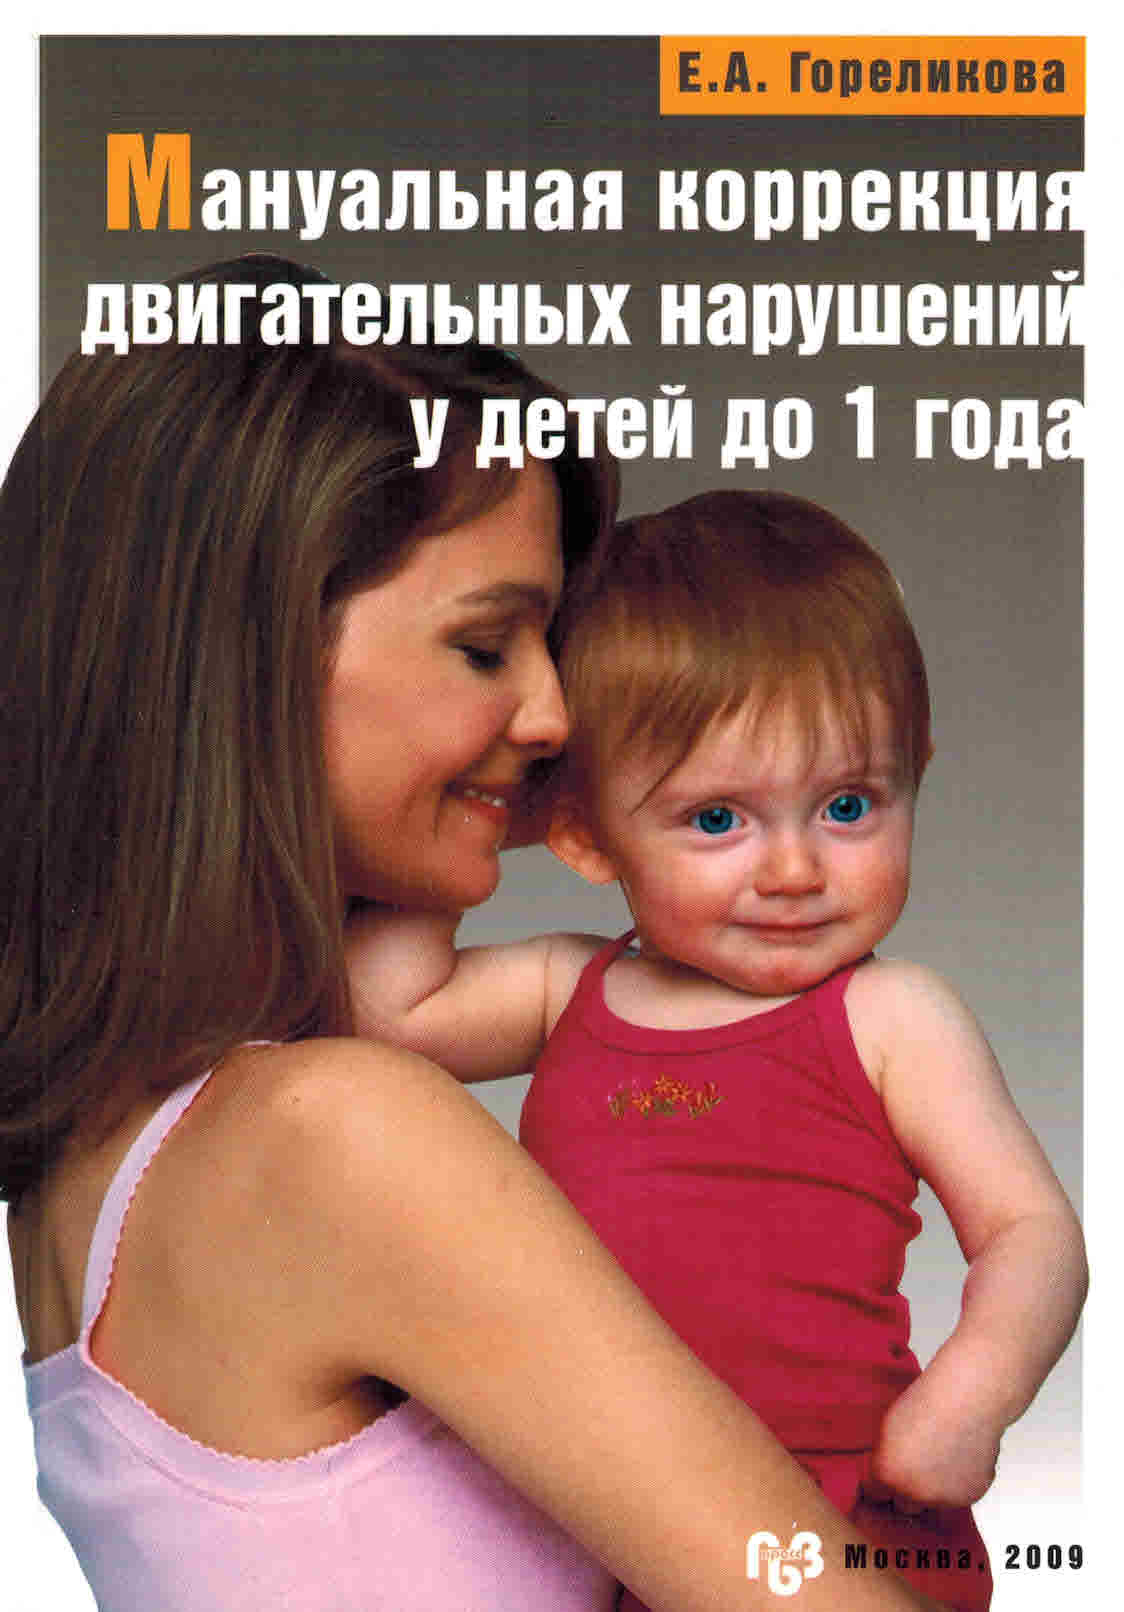 Мануальная коррекция двигательных нарушений у детей до 1 года, 2009 г.